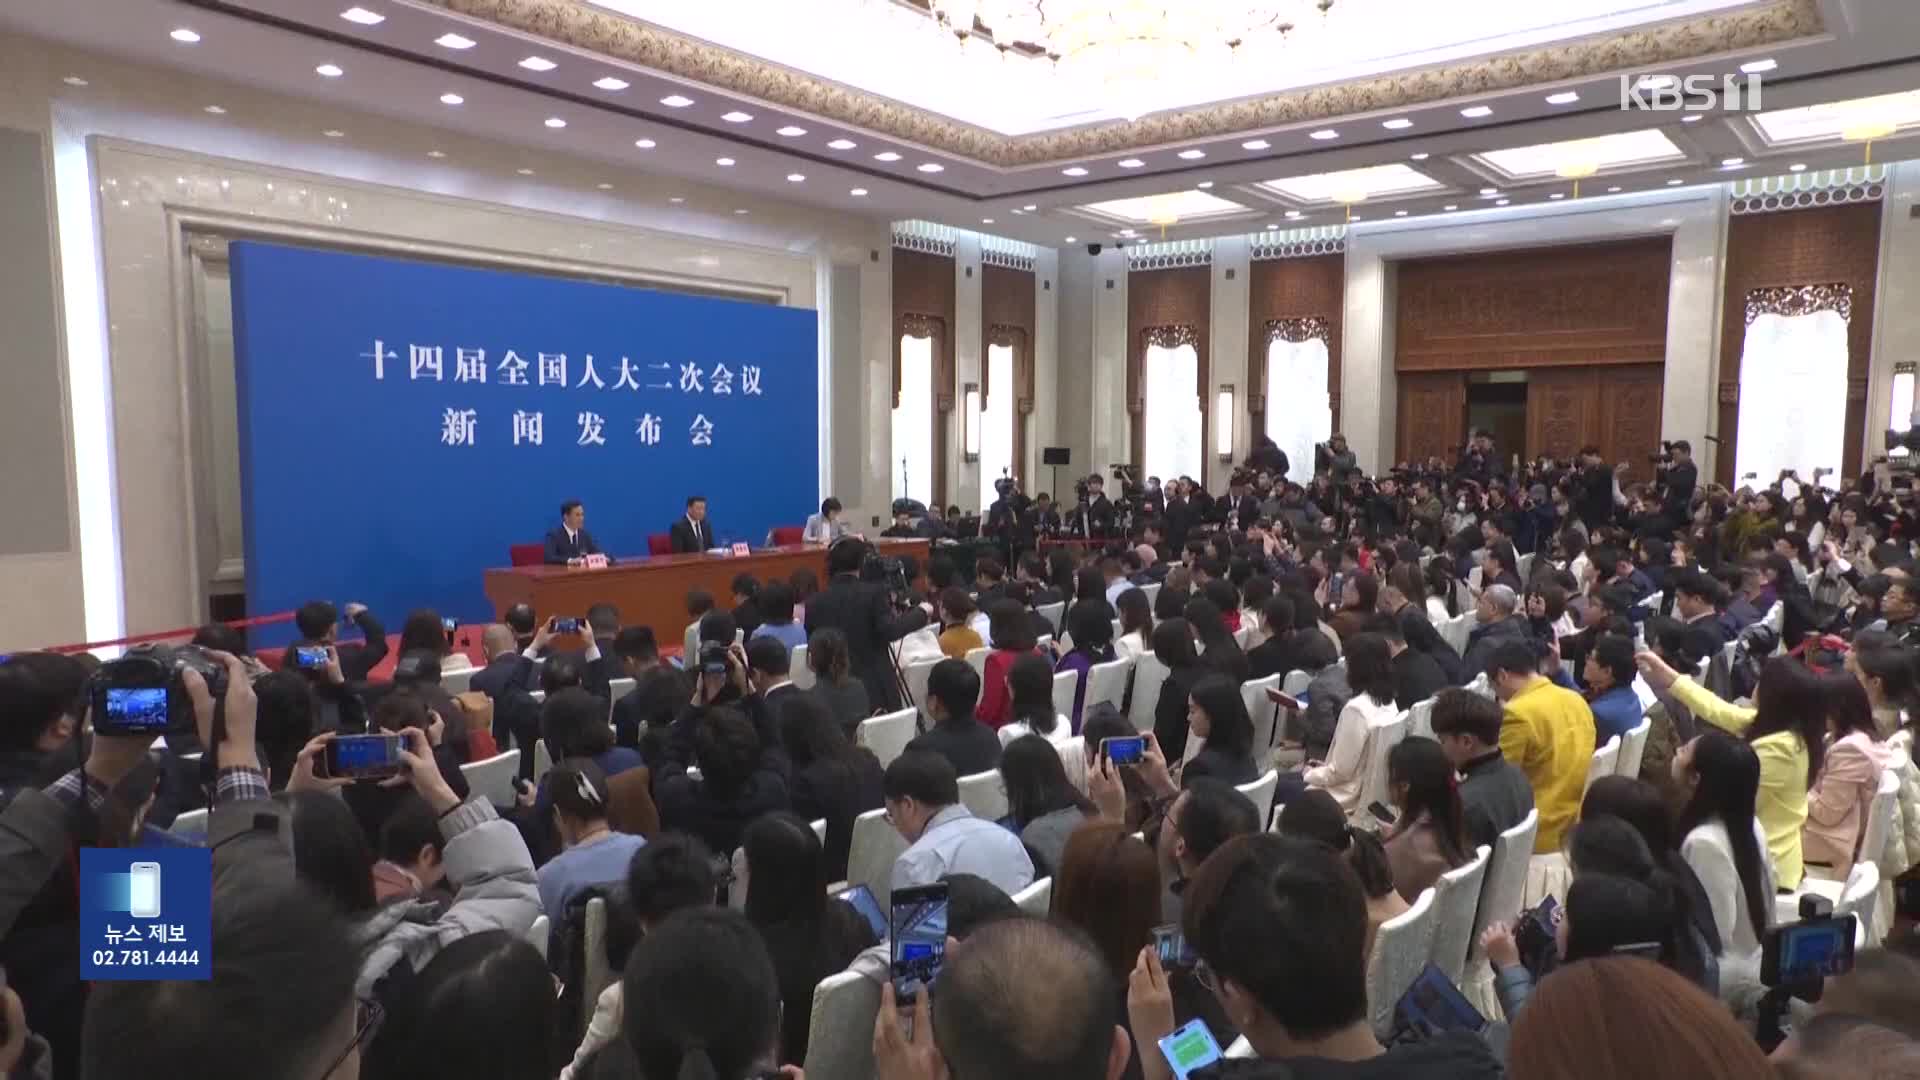 중국, 오늘 경제 성장 목표 발표…총리 폐막 기자회견은 폐지